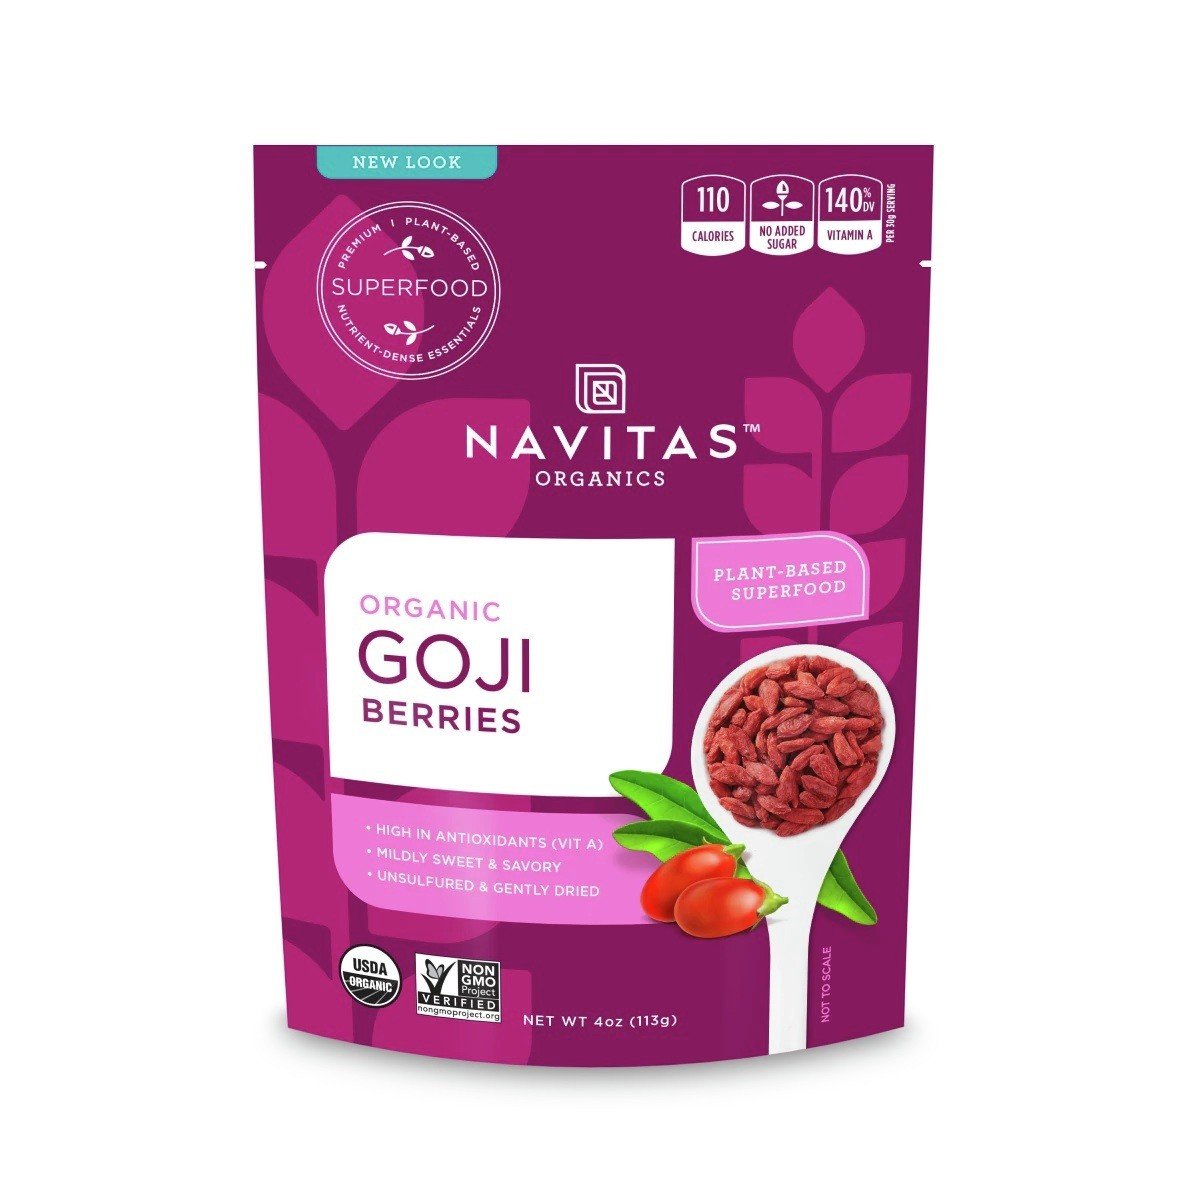 Navitas Goji Berries Organic 8 oz Bag